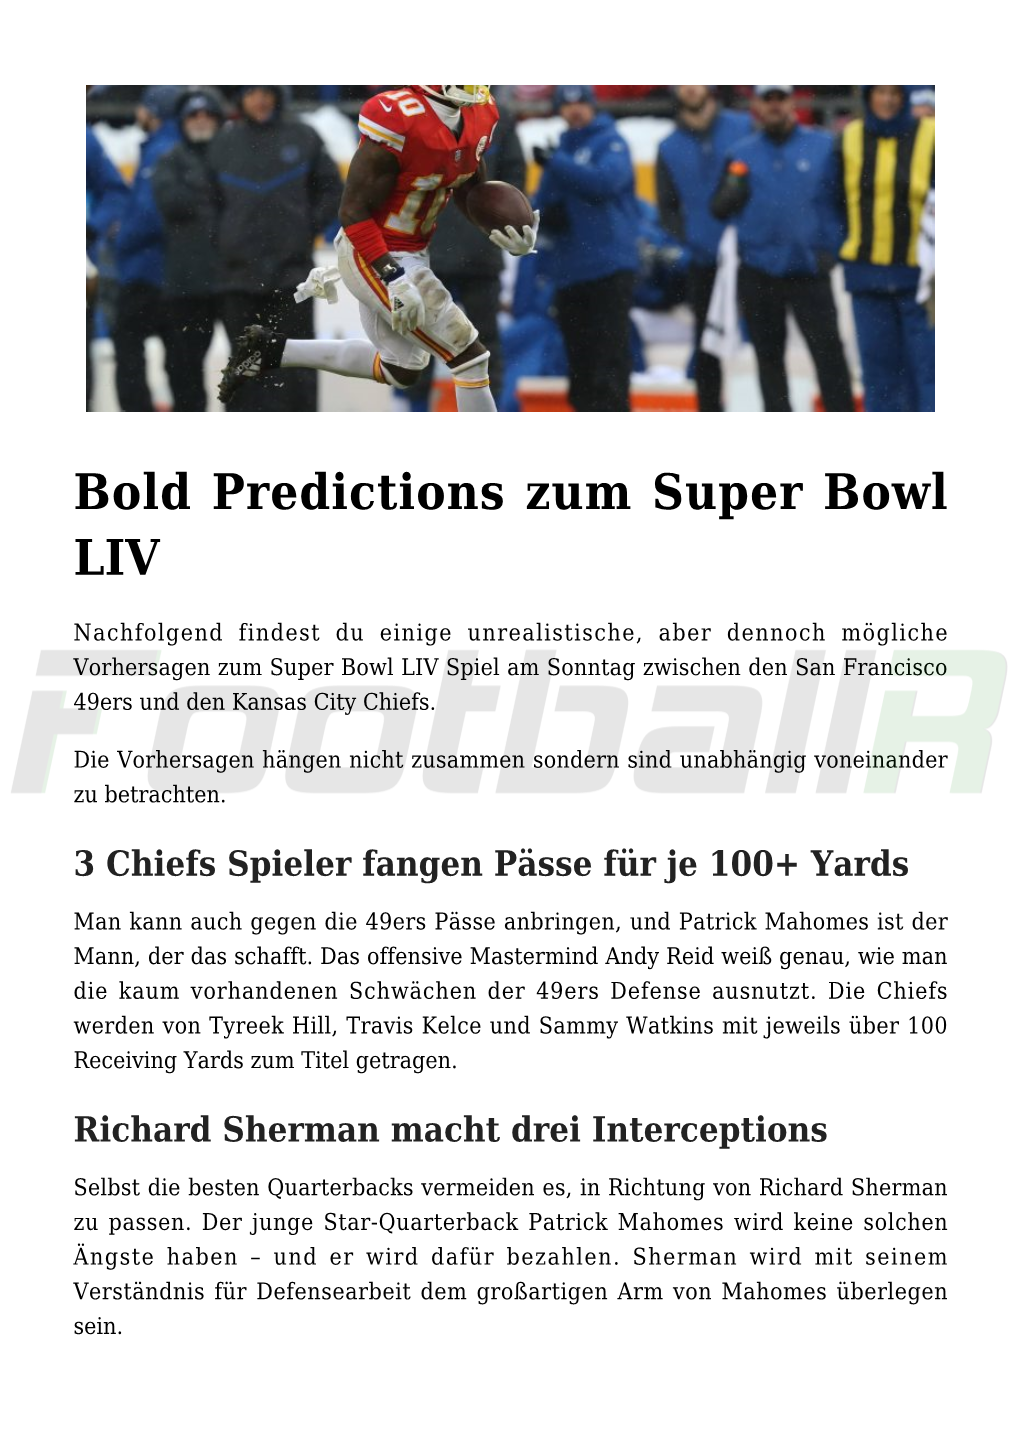 Bold Predictions Zum Super Bowl LIV